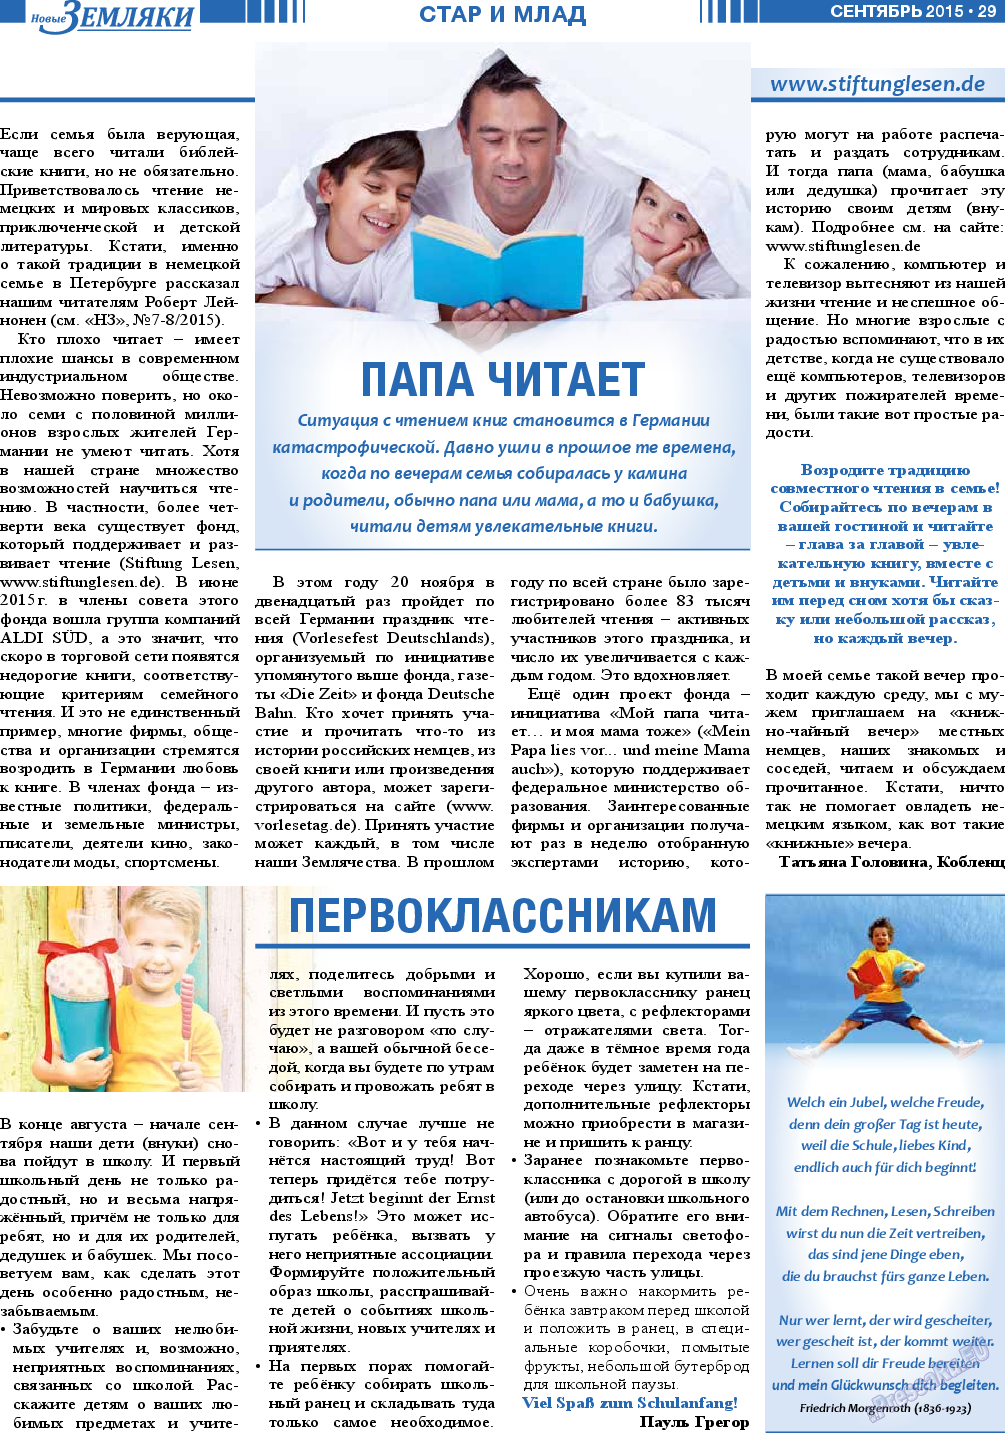 Новые Земляки, газета. 2015 №9 стр.29